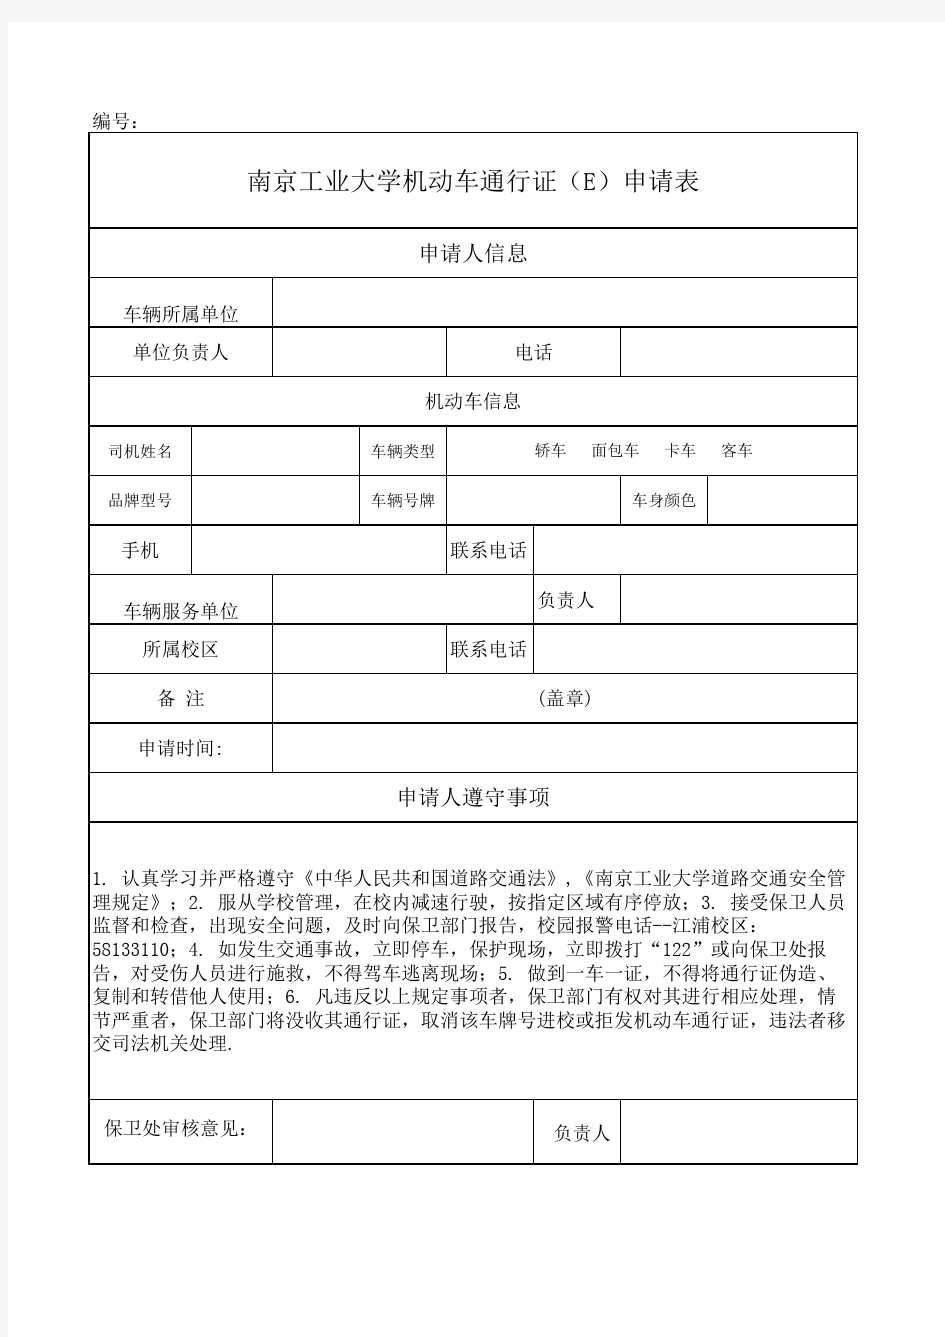 南京工业大学机动车通行证(e)申请表